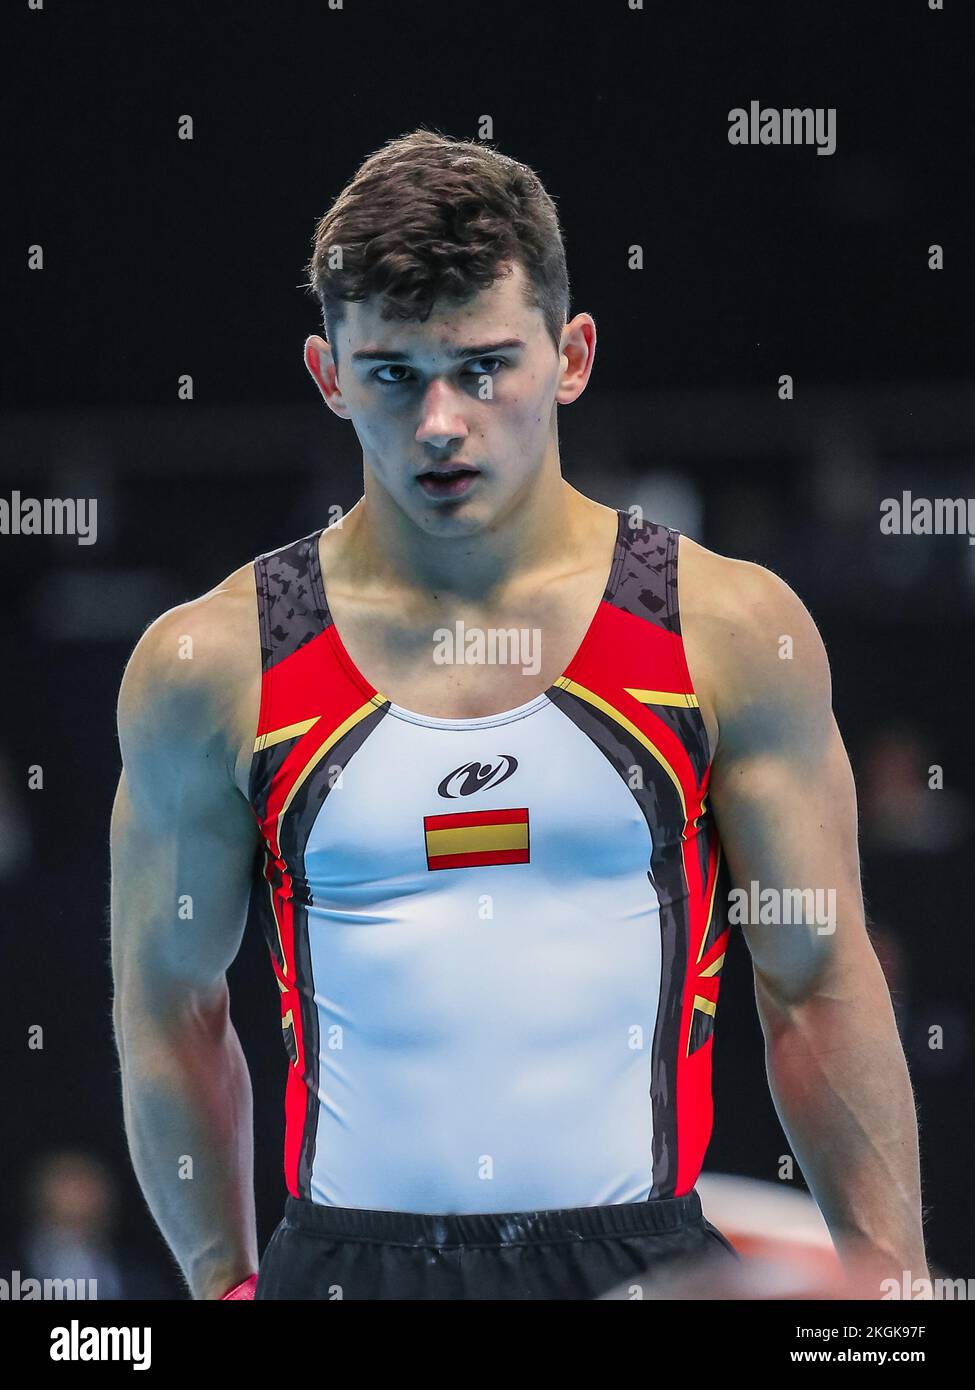 Szczecin, Pologne, 10 avril 2019: Athlète espagnol Mir Nicolau lors des championnats européens de gymnastique artistique Banque D'Images